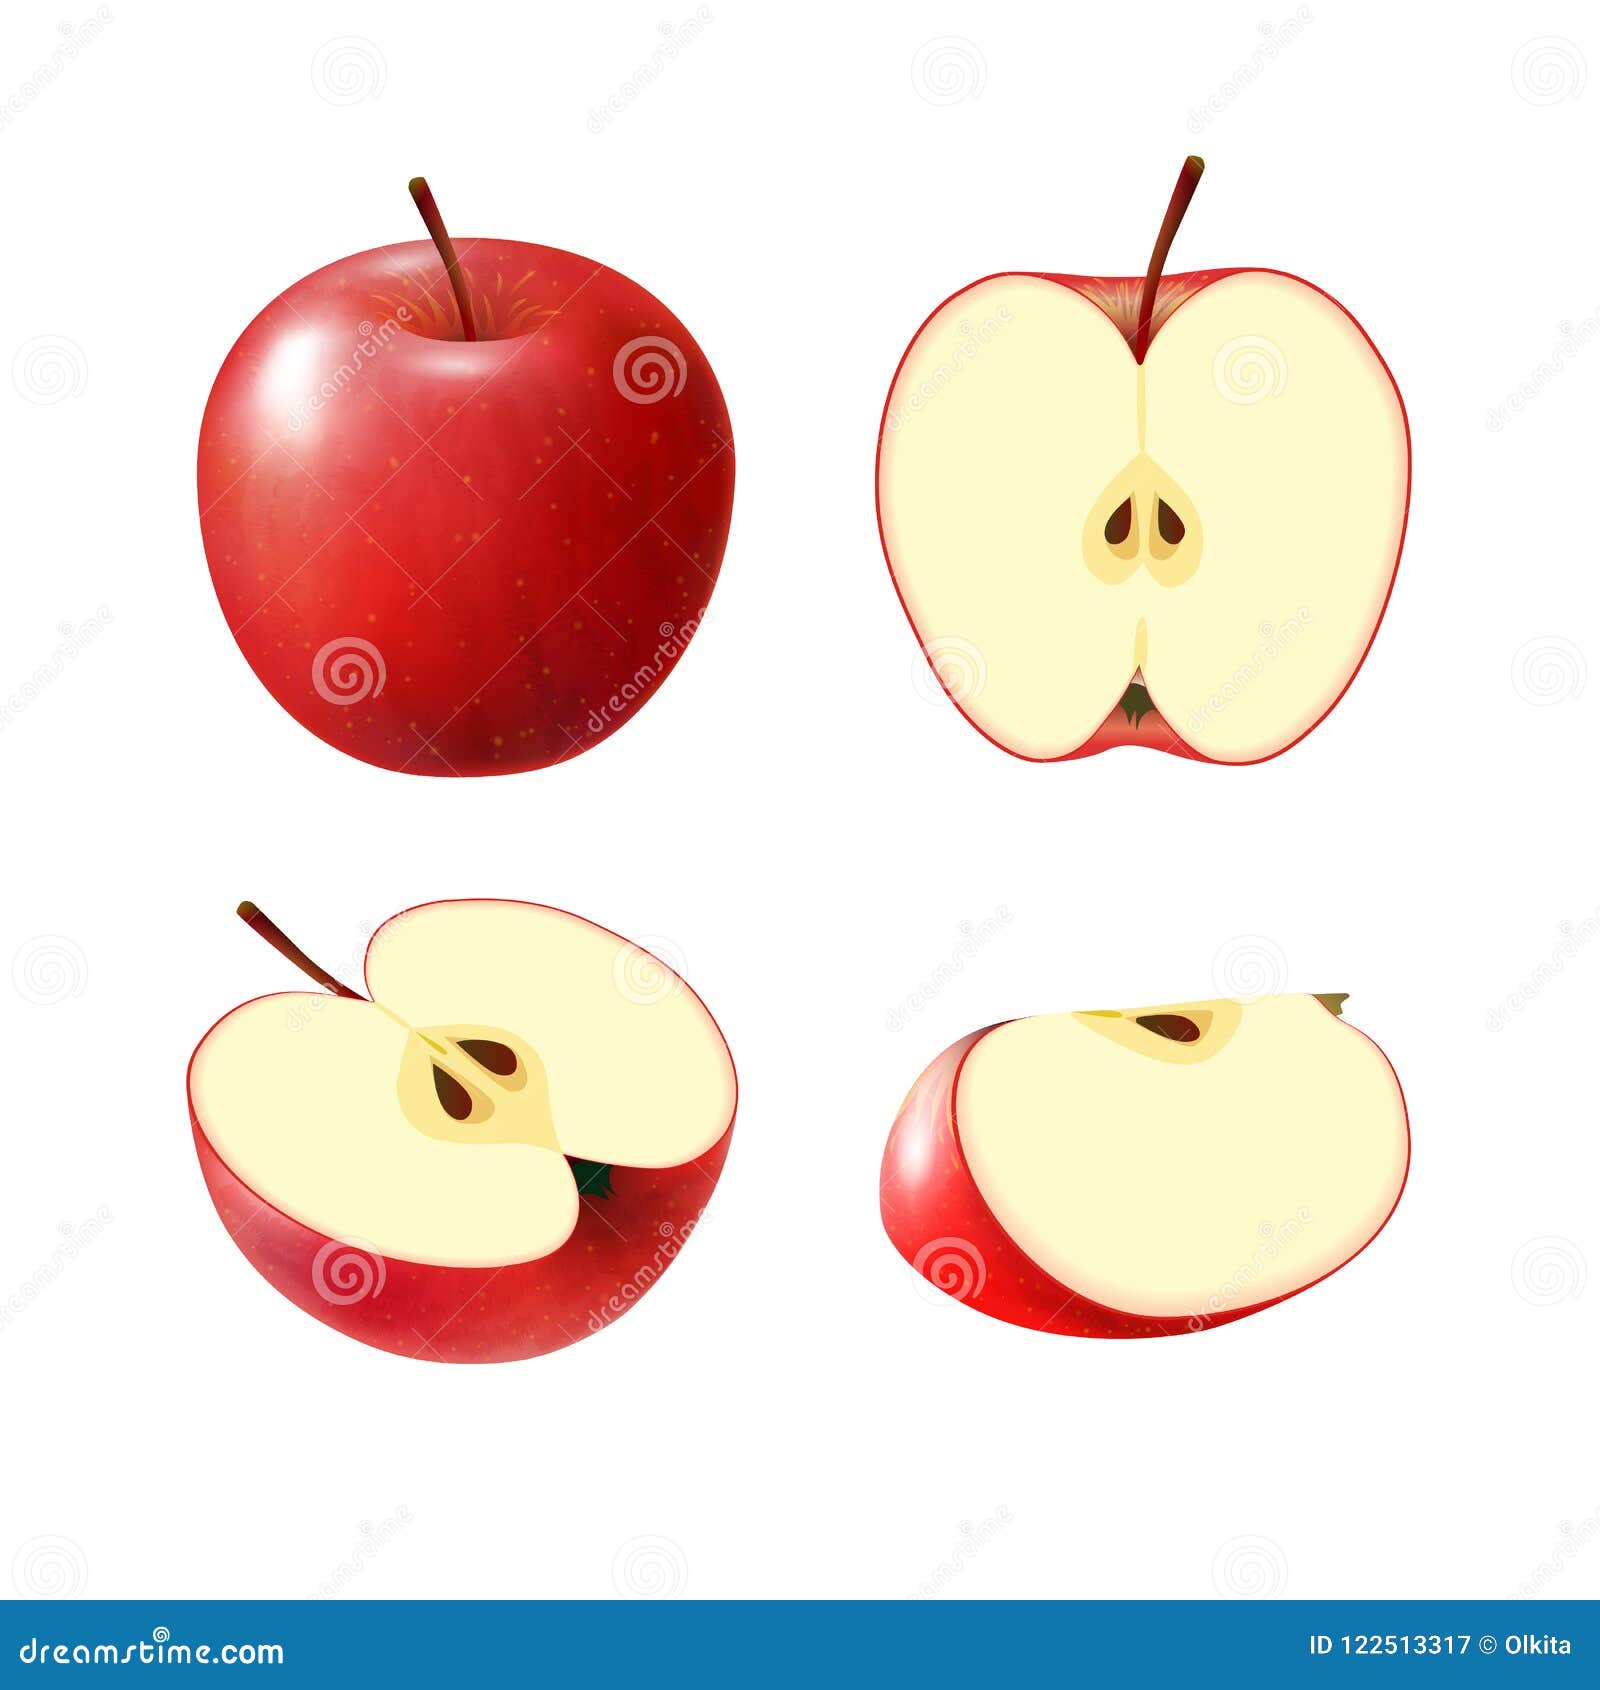 Две трети яблока. Яблоко в разрезе. Половинка яблока. Яблоко целое и половинка. Красное яблоко в разрезе.